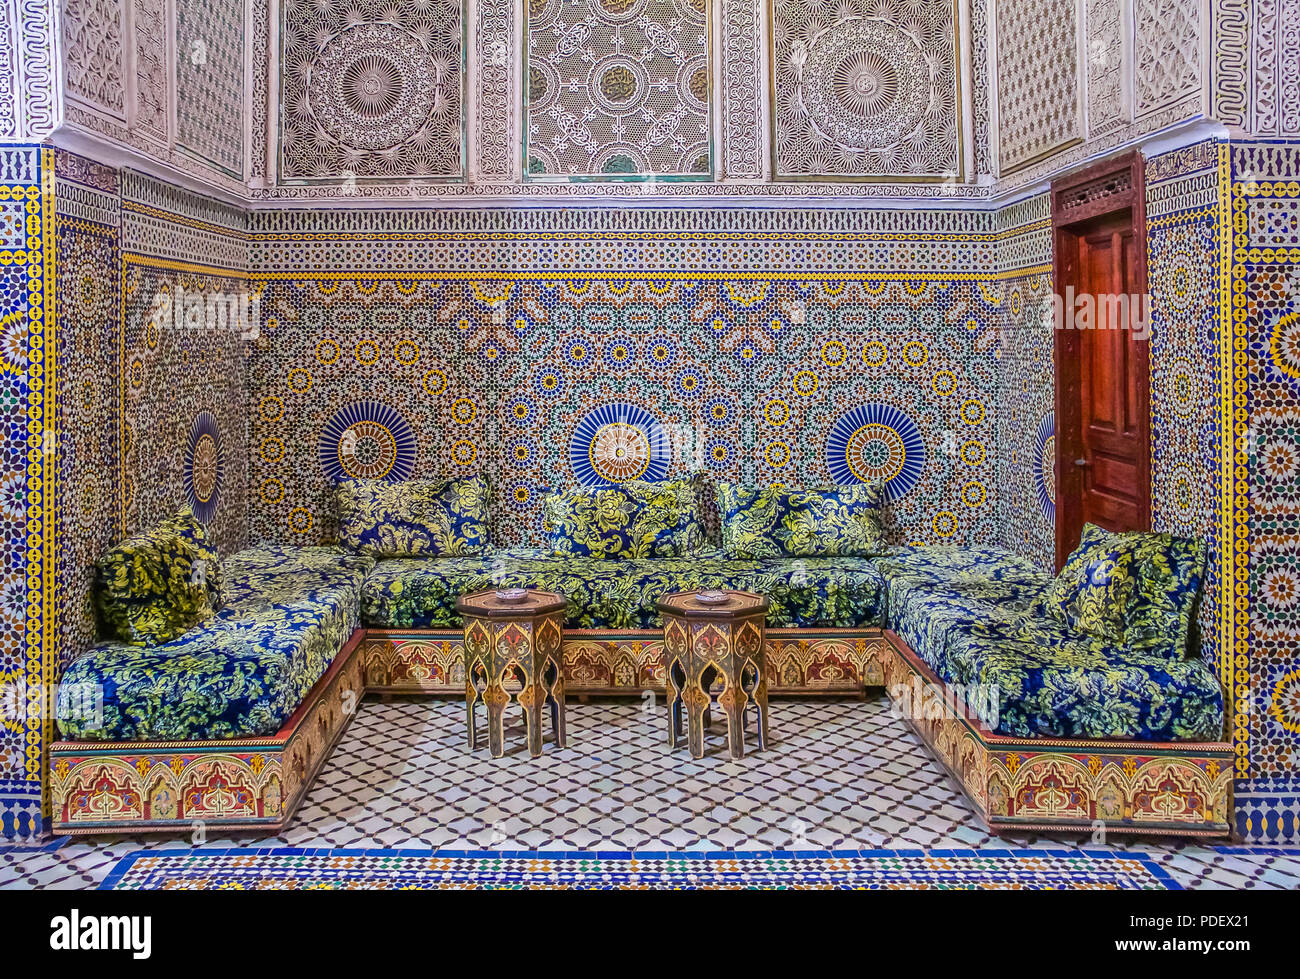 Fes, Maroc - 11 mai 2013 : cour intérieure décorée avec des mosaïques et des sculptures en arabesque, avec divans traditionnel dans un riad marocain Banque D'Images